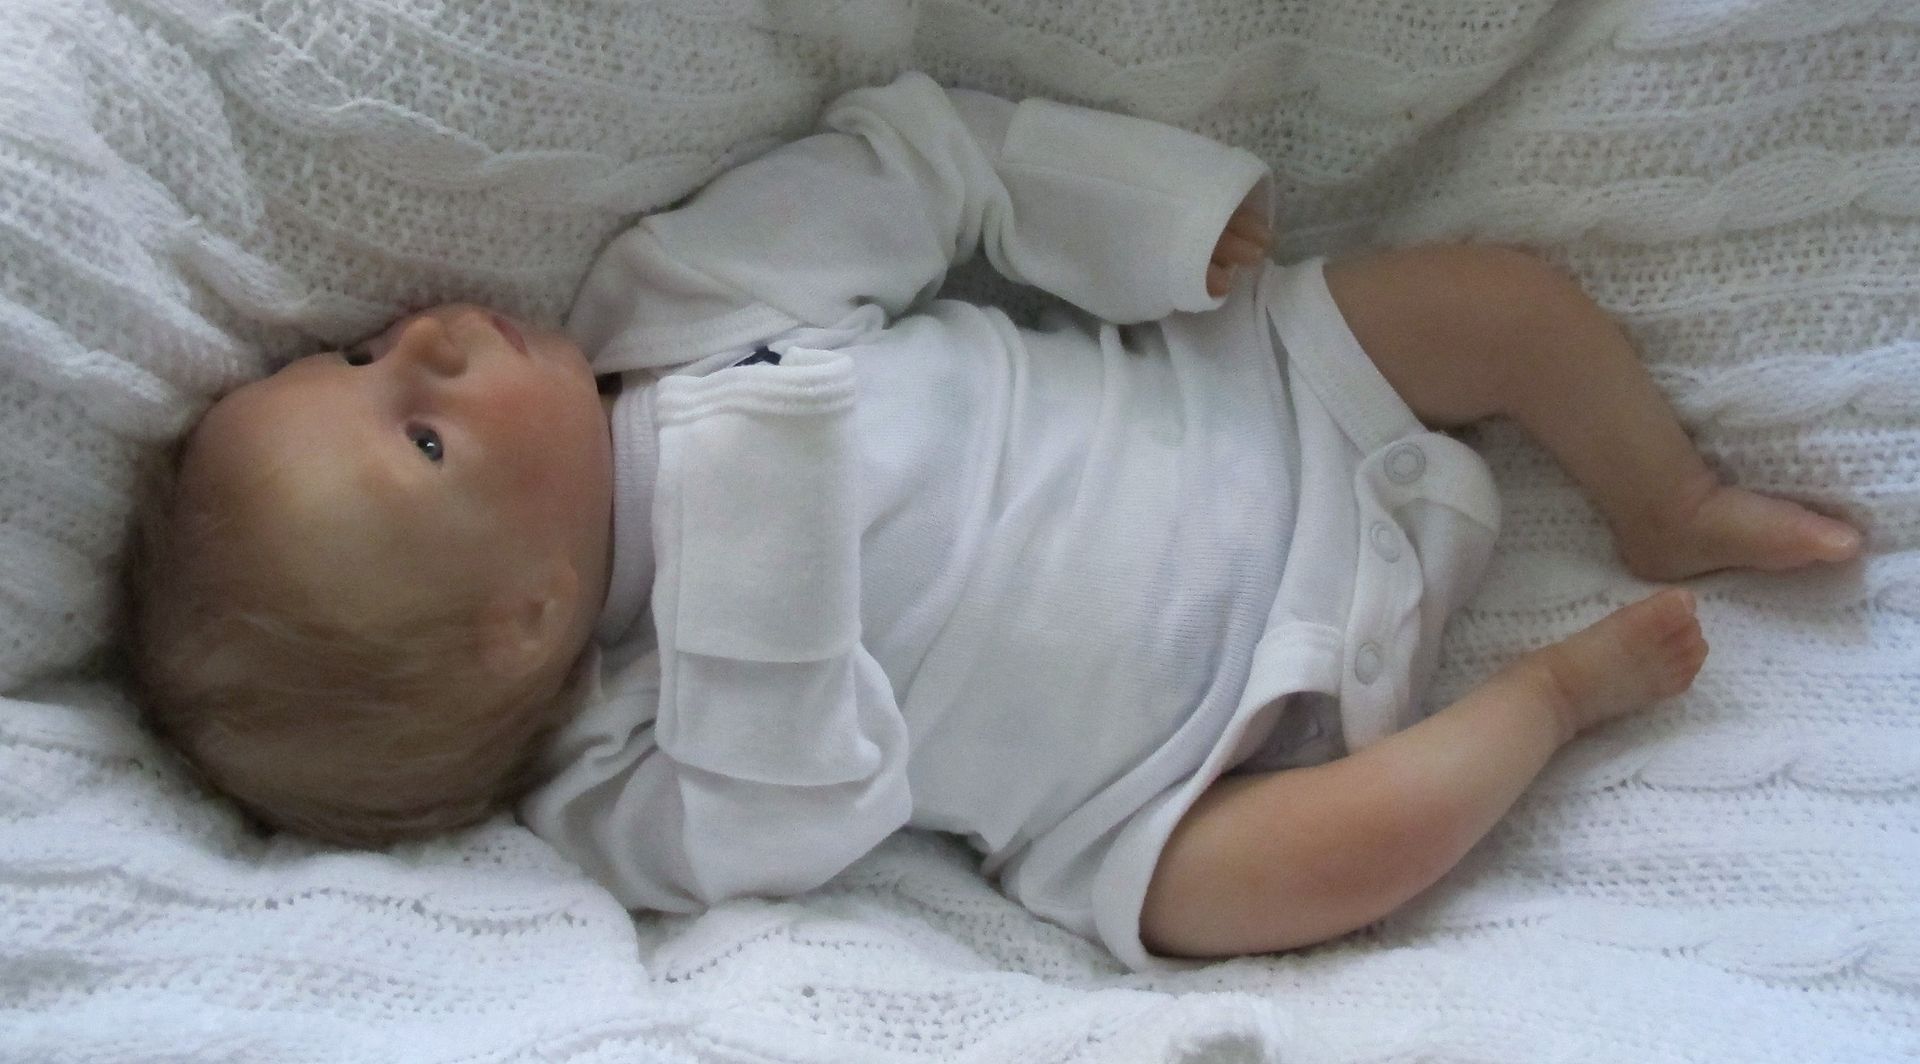 Doves Nursery ♥ Real Life Reborn Baby Boy ♥ A Cameron Klingman Sculpt